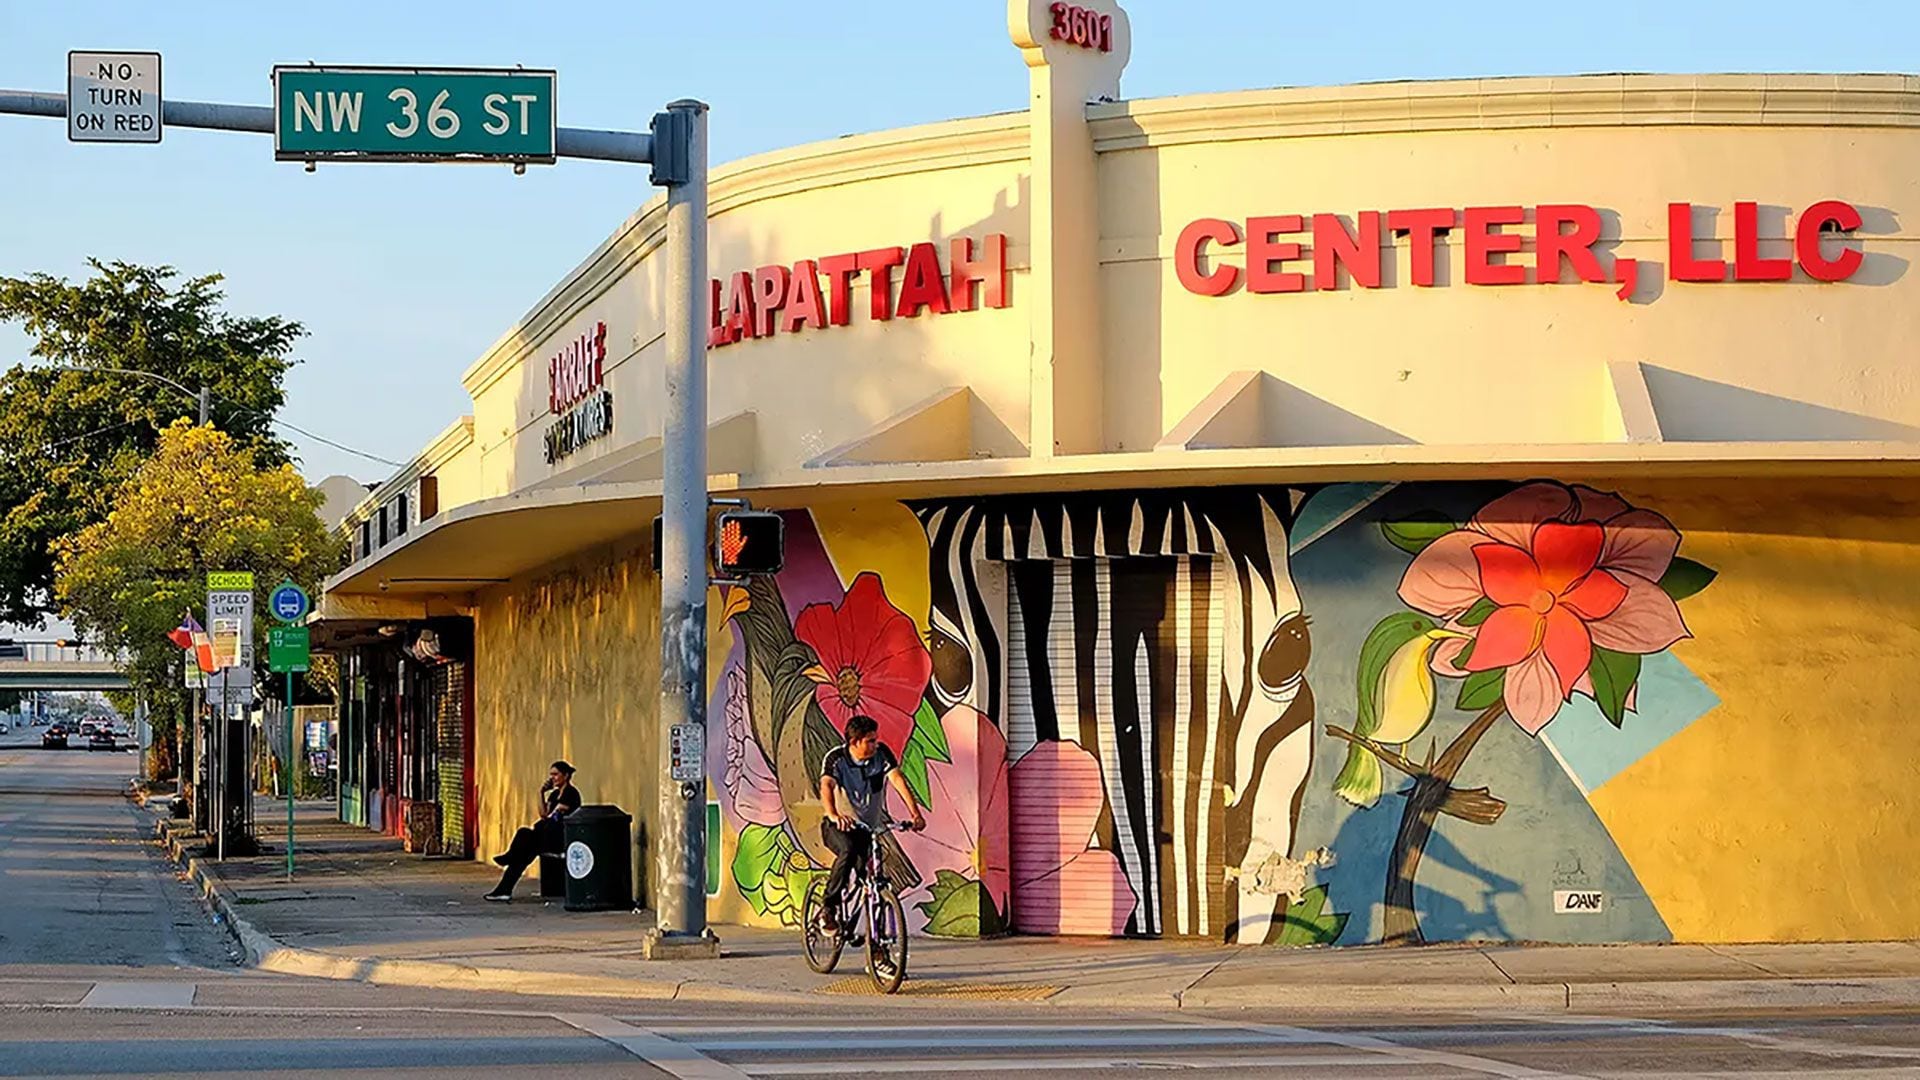 Miami redefine su escena cultural y artística, con proyectos innovadores y la transformación de espacios urbanos en centros de arte y creatividad (National Trust for Historic Preservation)